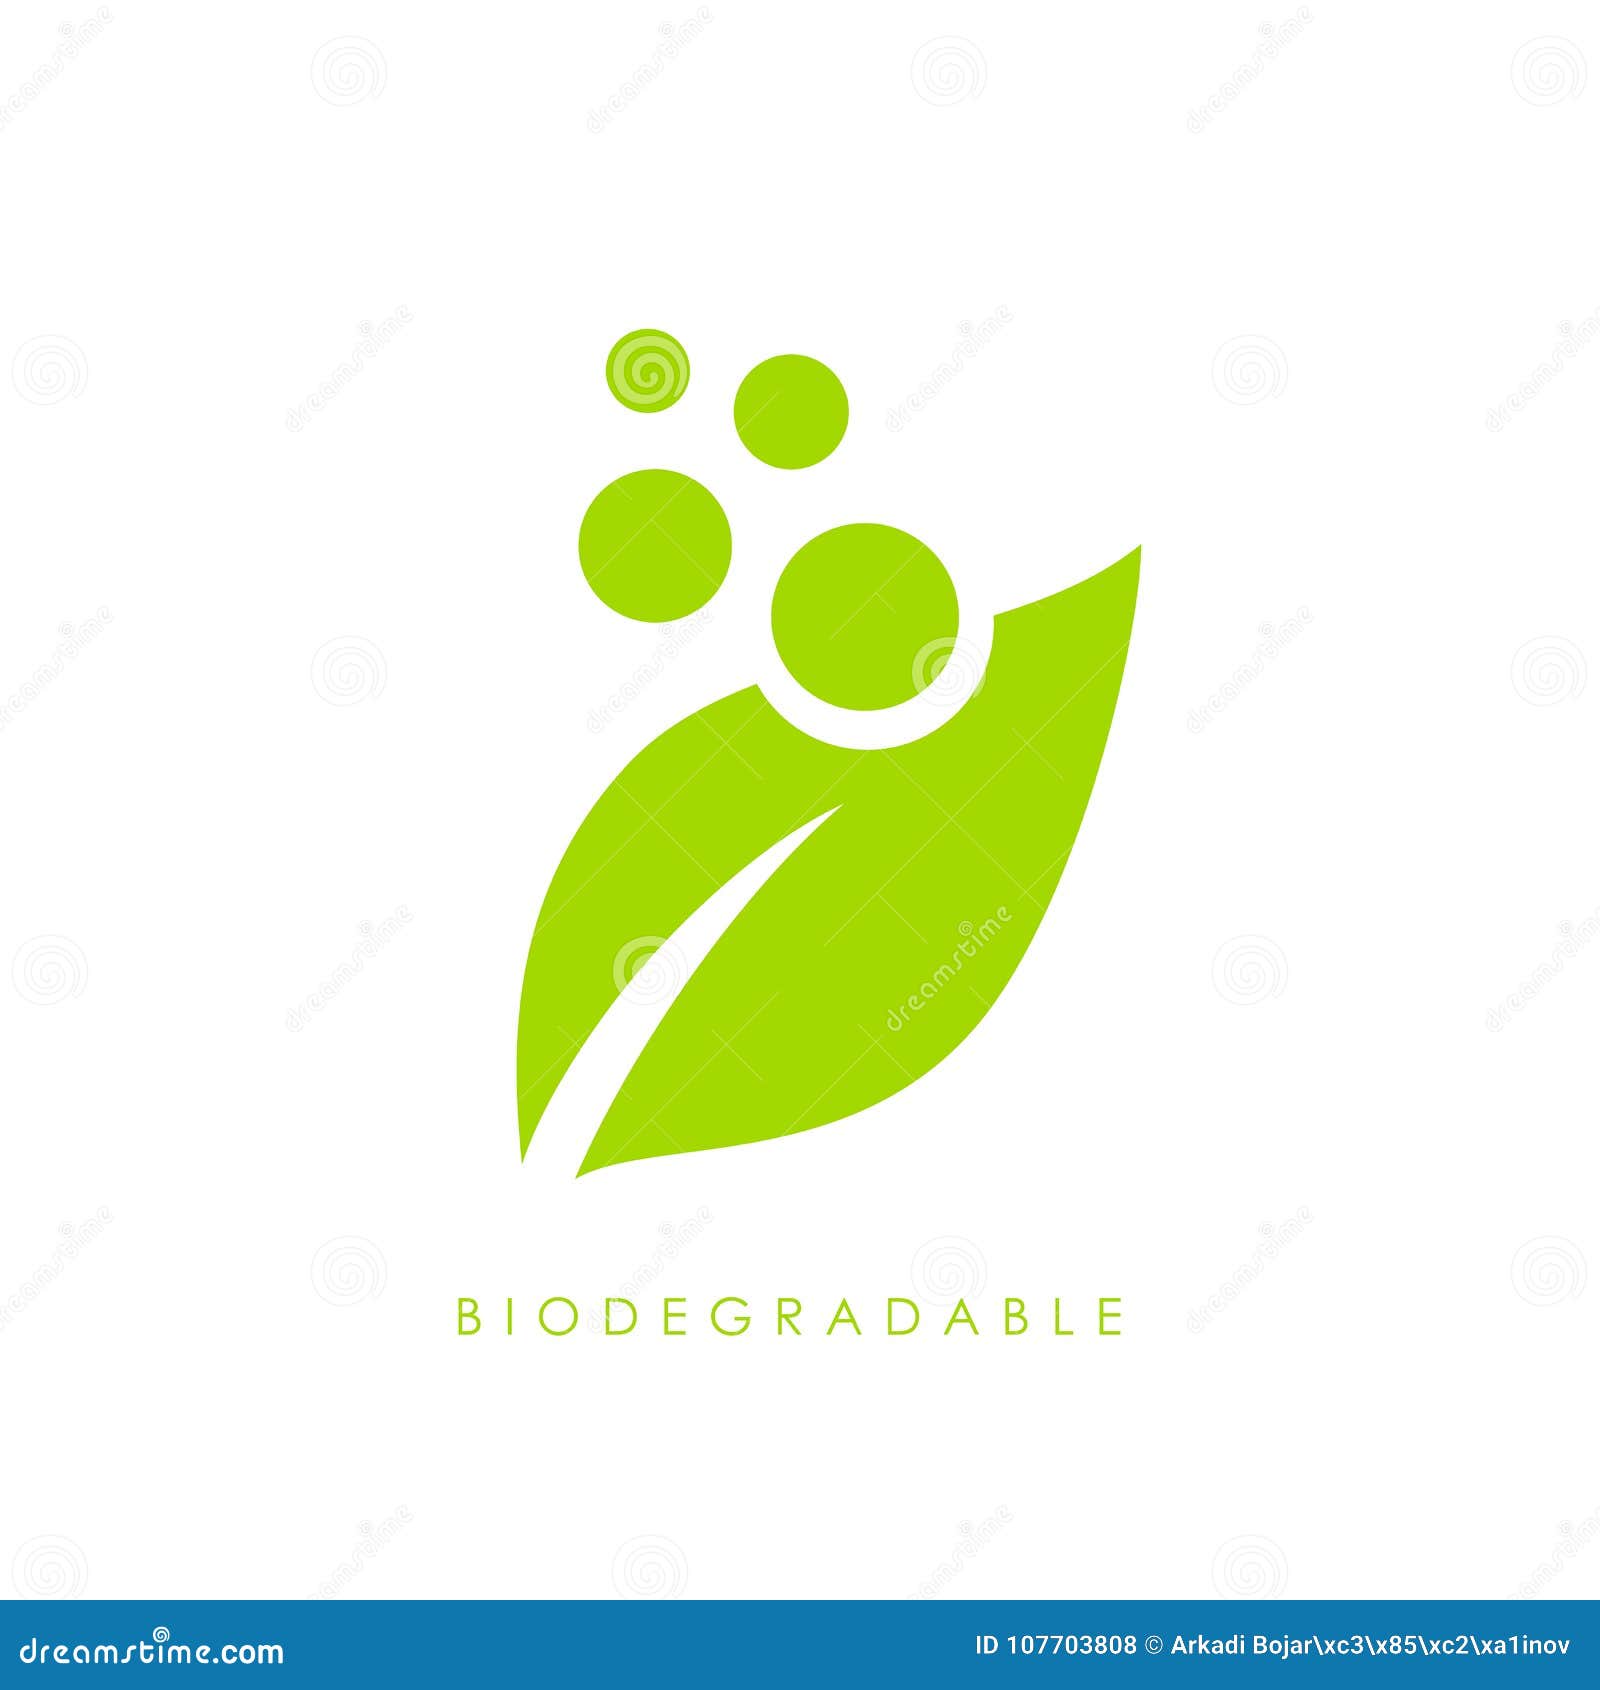 biodegradable green leaf  logo